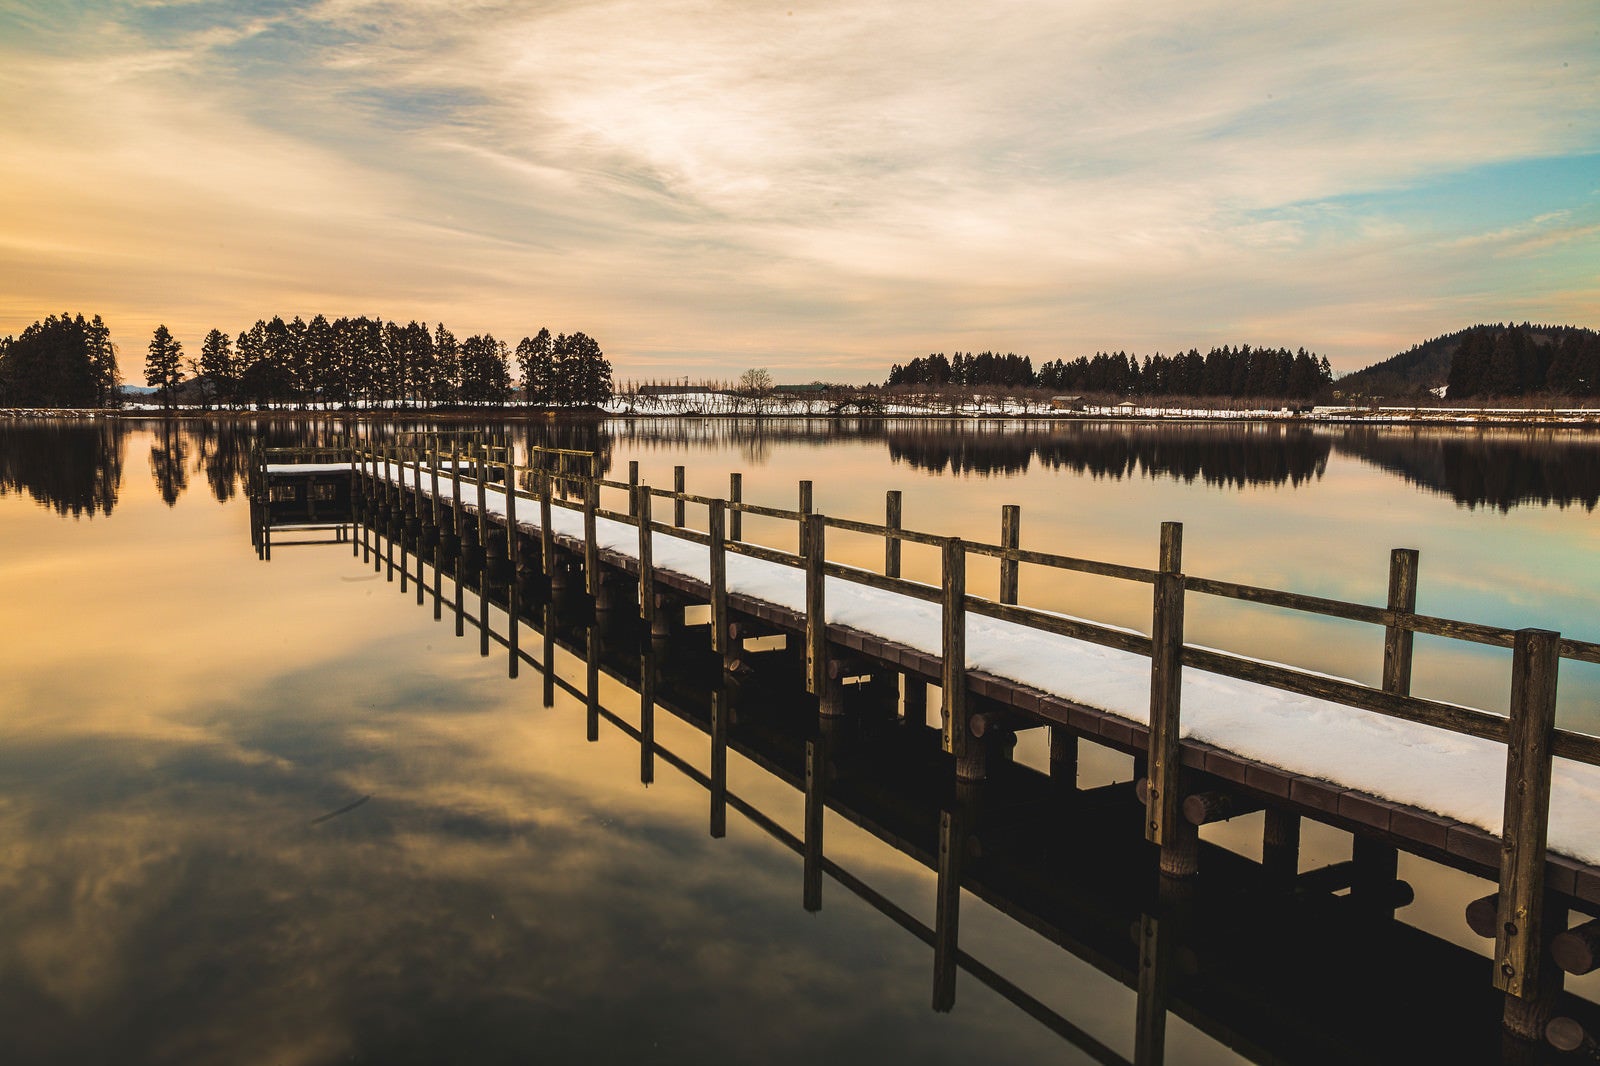 「夕焼けに染まる湖面と桟橋」の写真